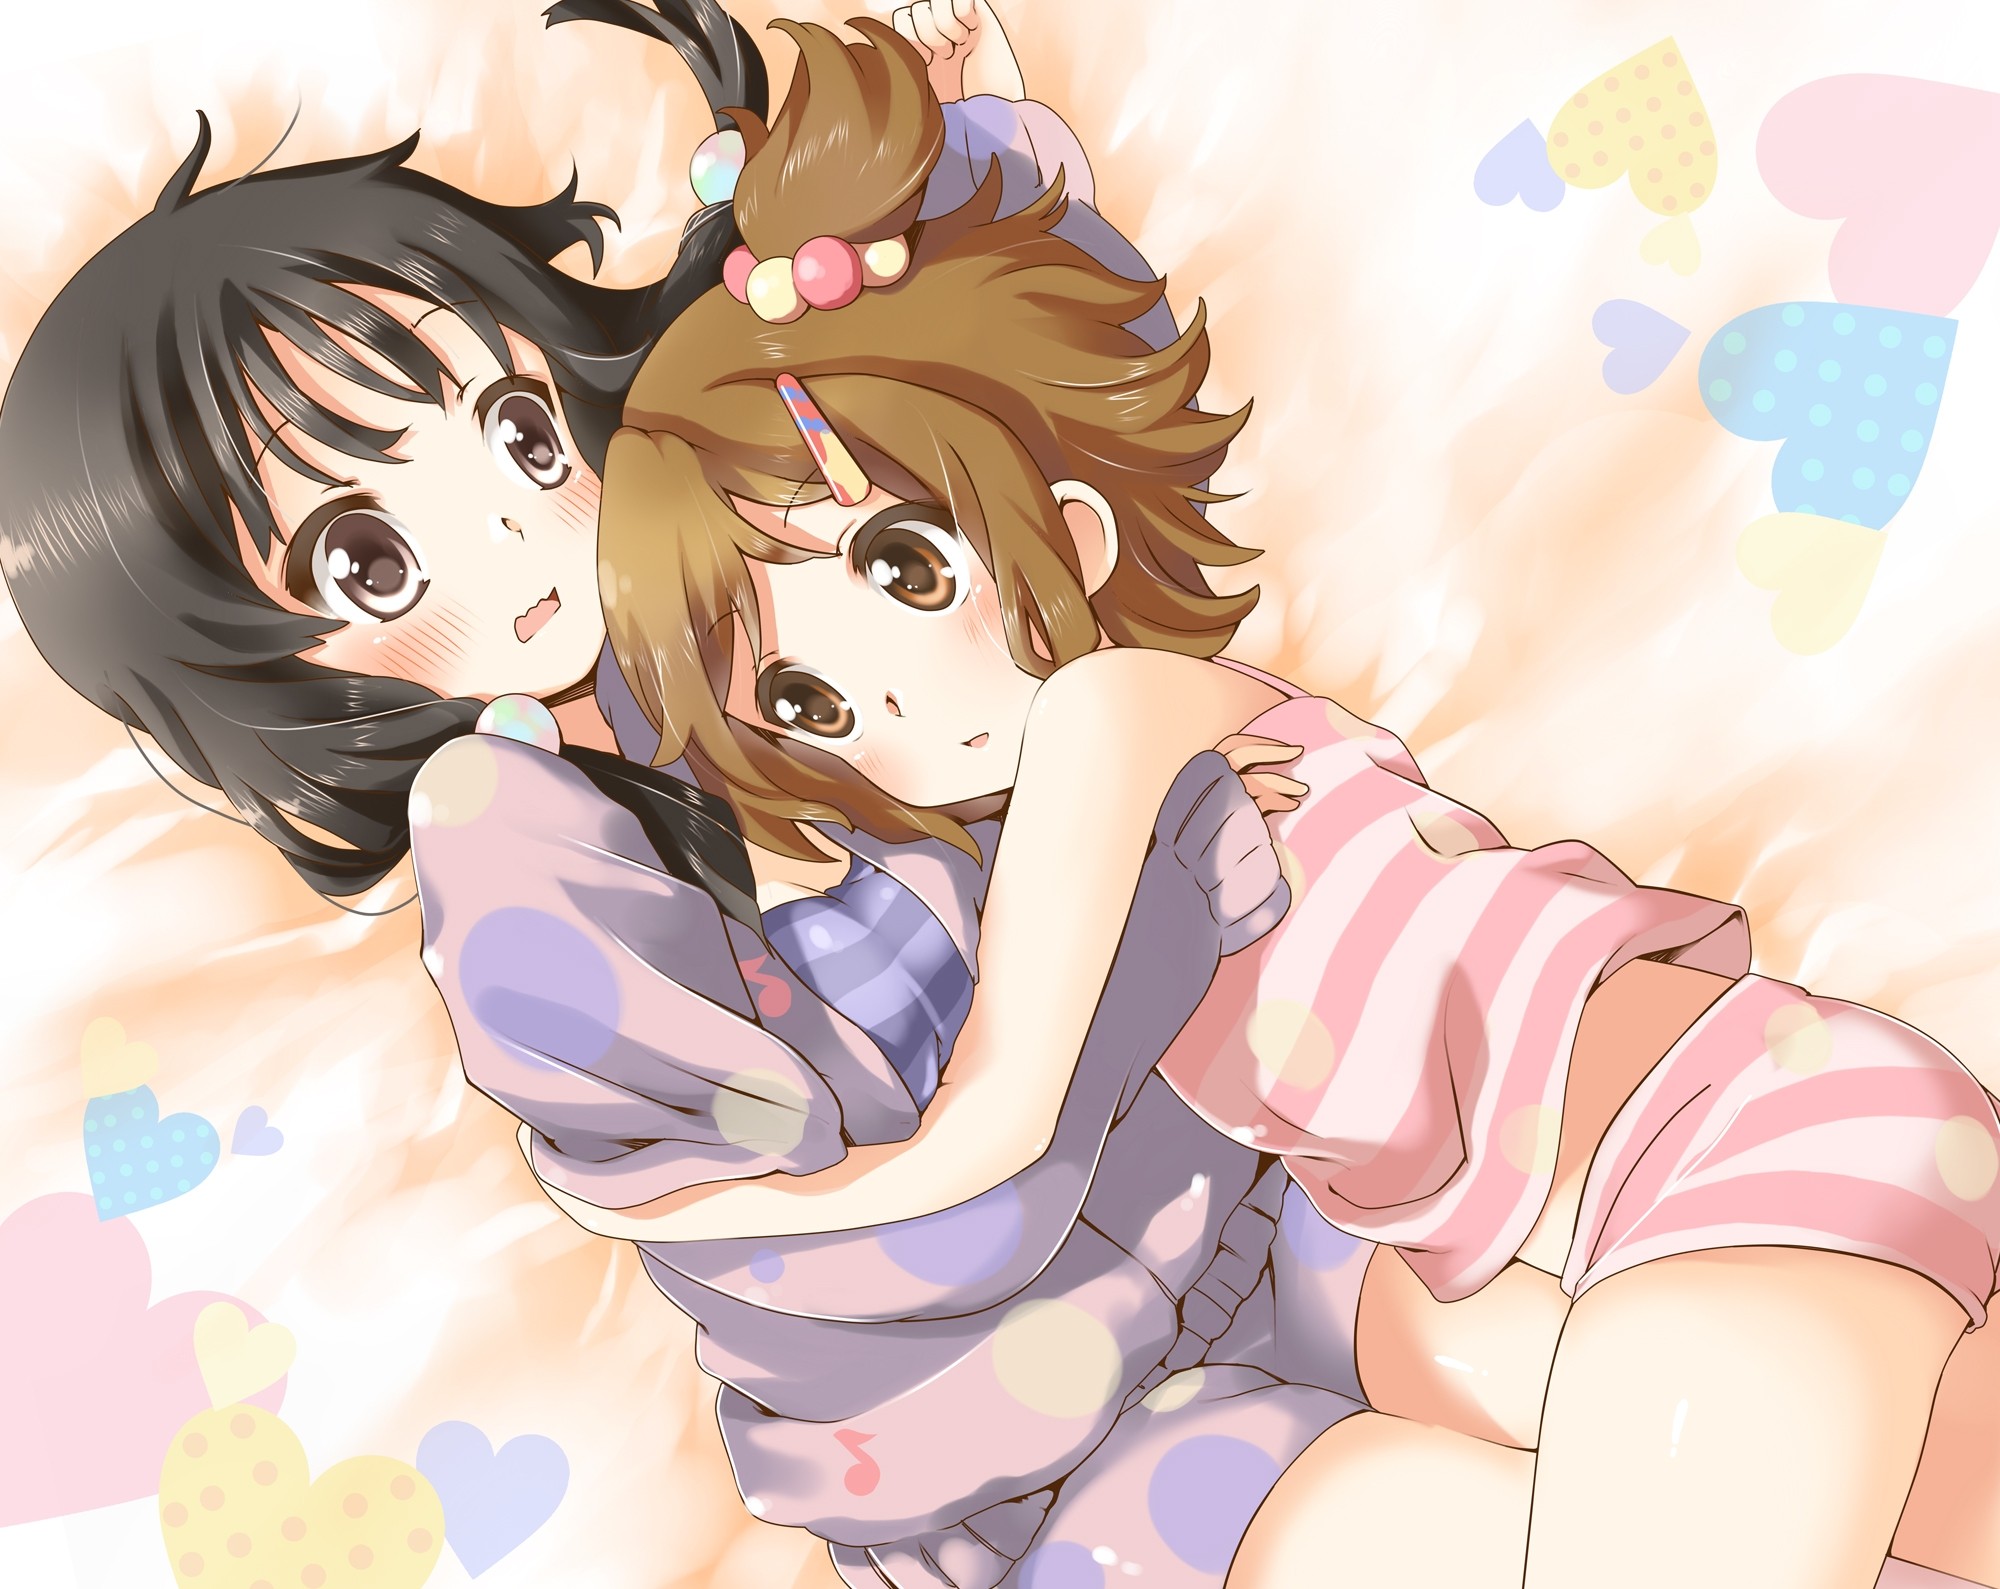 Anime 2000x1589 K-ON! anime girls anime two women hugging black hair brunette brown eyes pants heart (design)